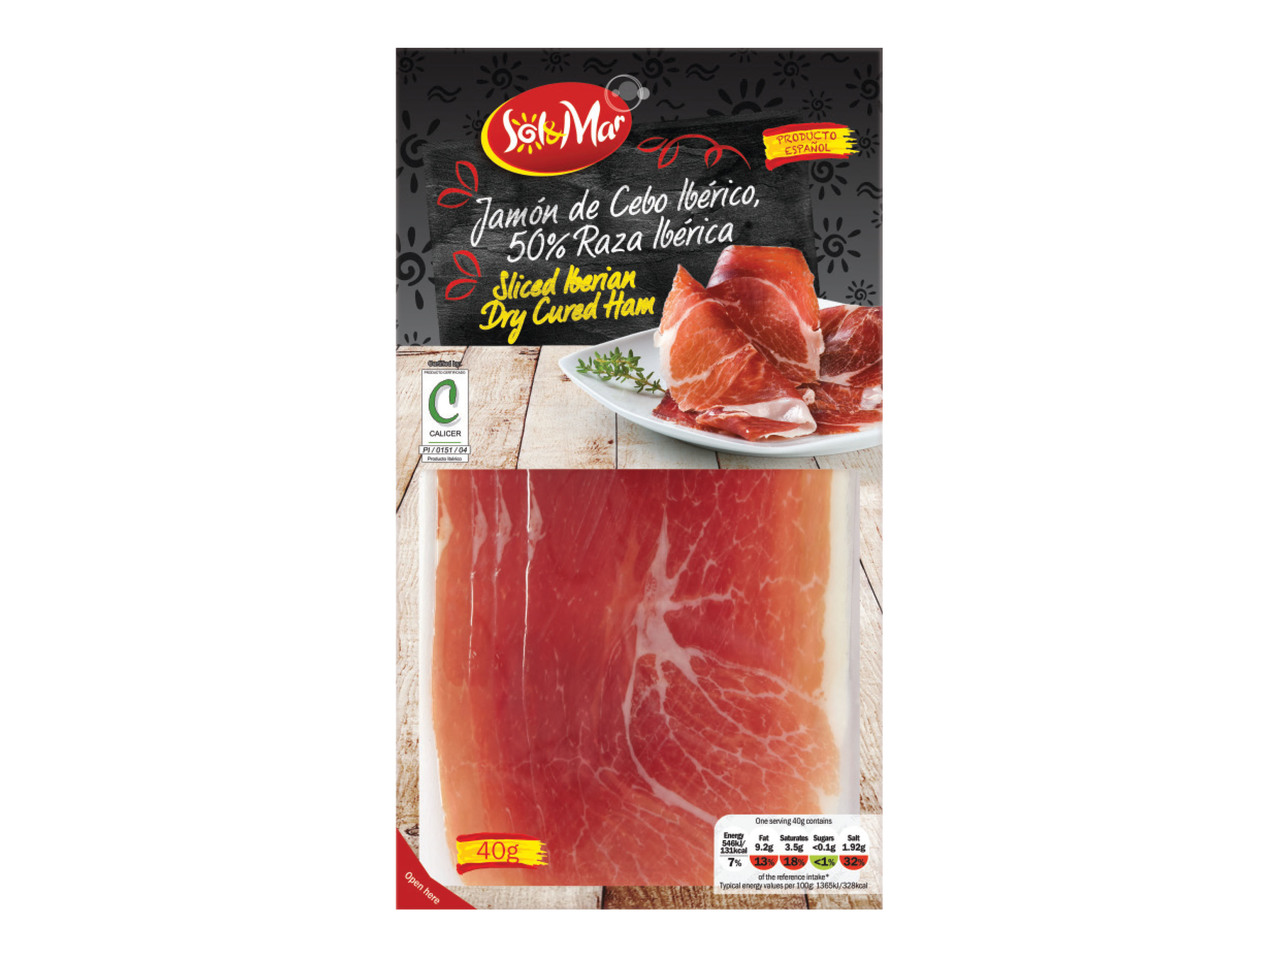 til svulst jævnt SOL & MAR Sliced Iberian Dry Cured Ham - Lidl — Ireland - Specials archive